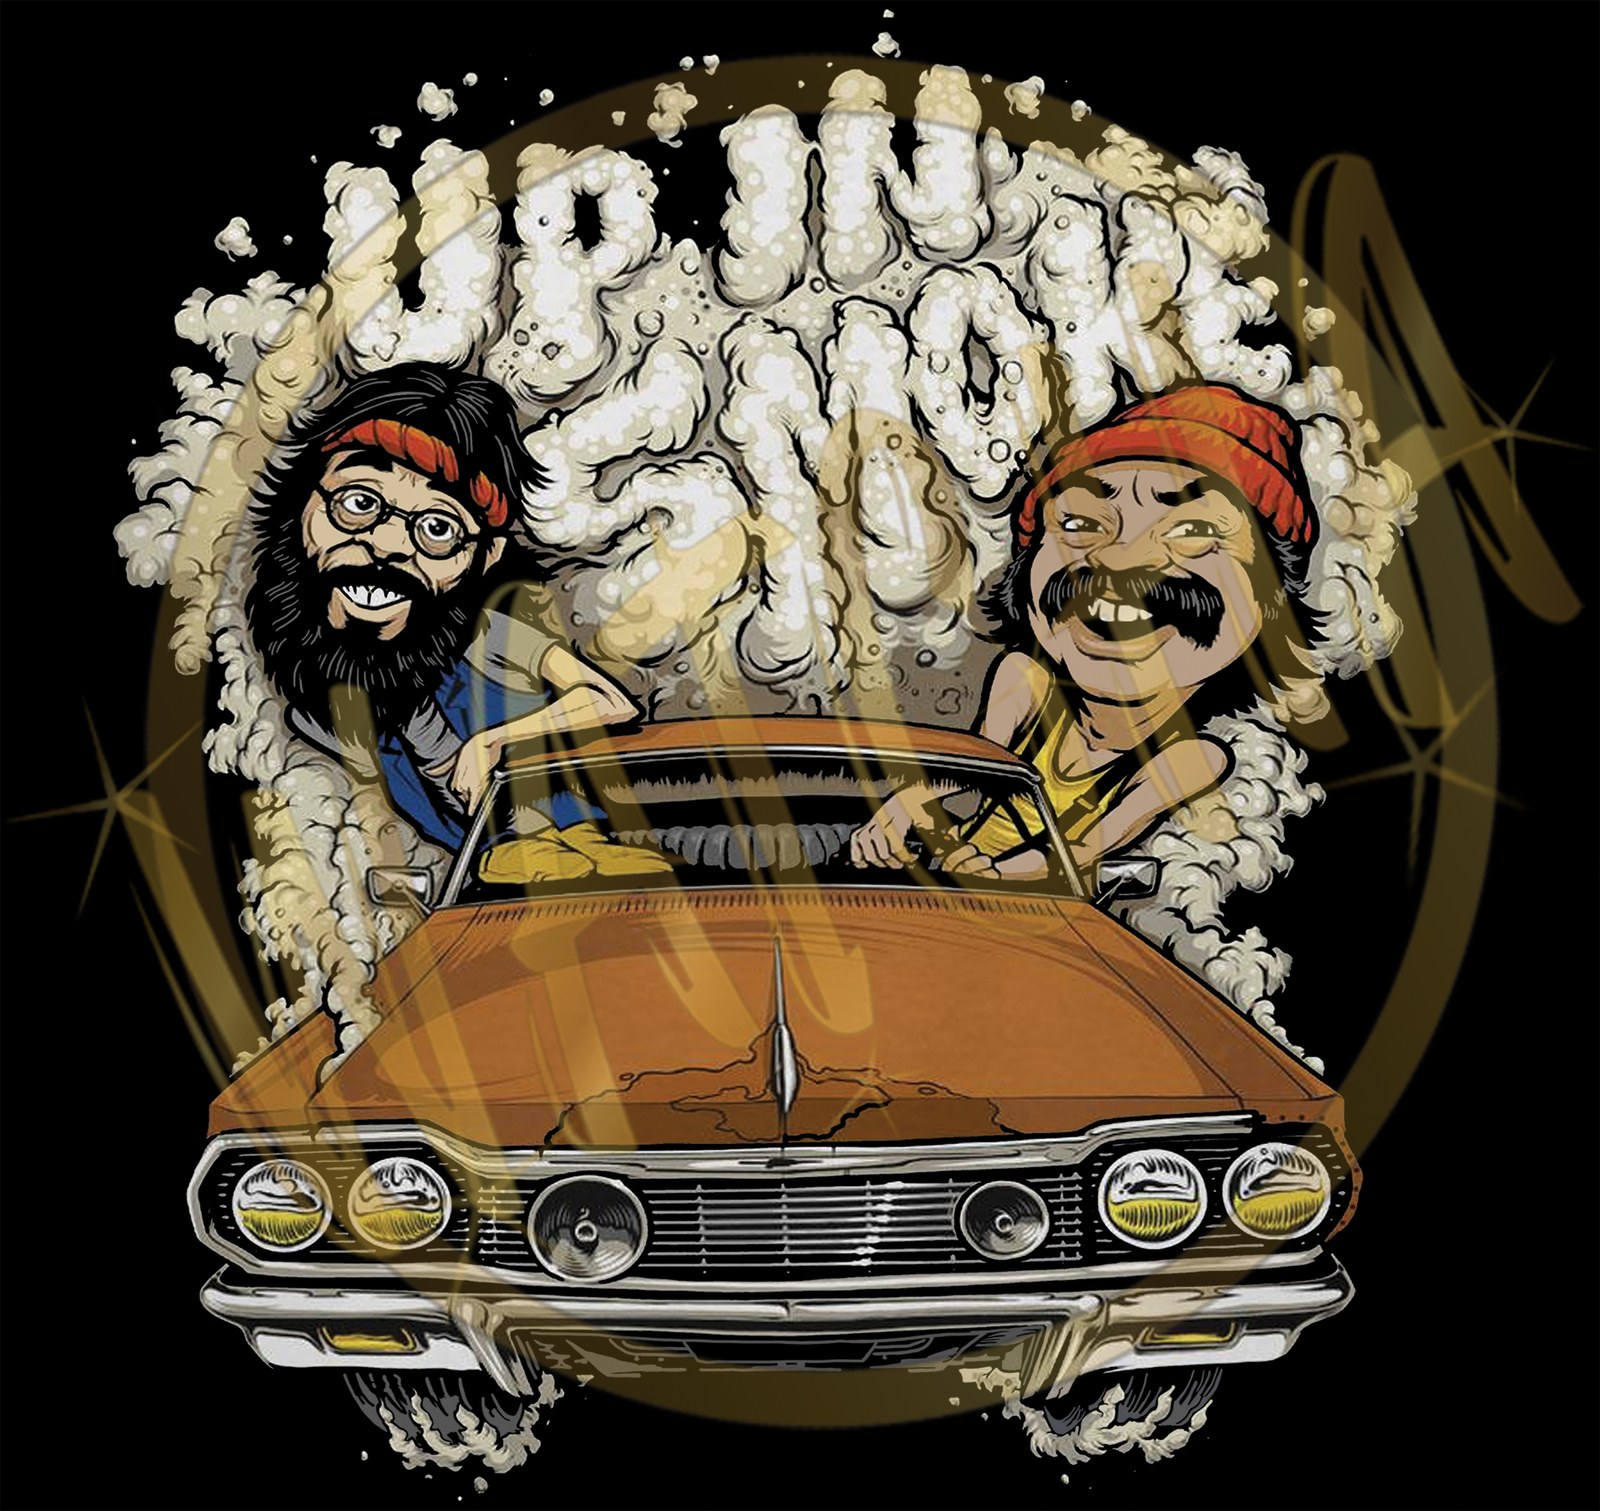 Cheech & Chong Up In Smoke Funny Image Men's T-Shirt